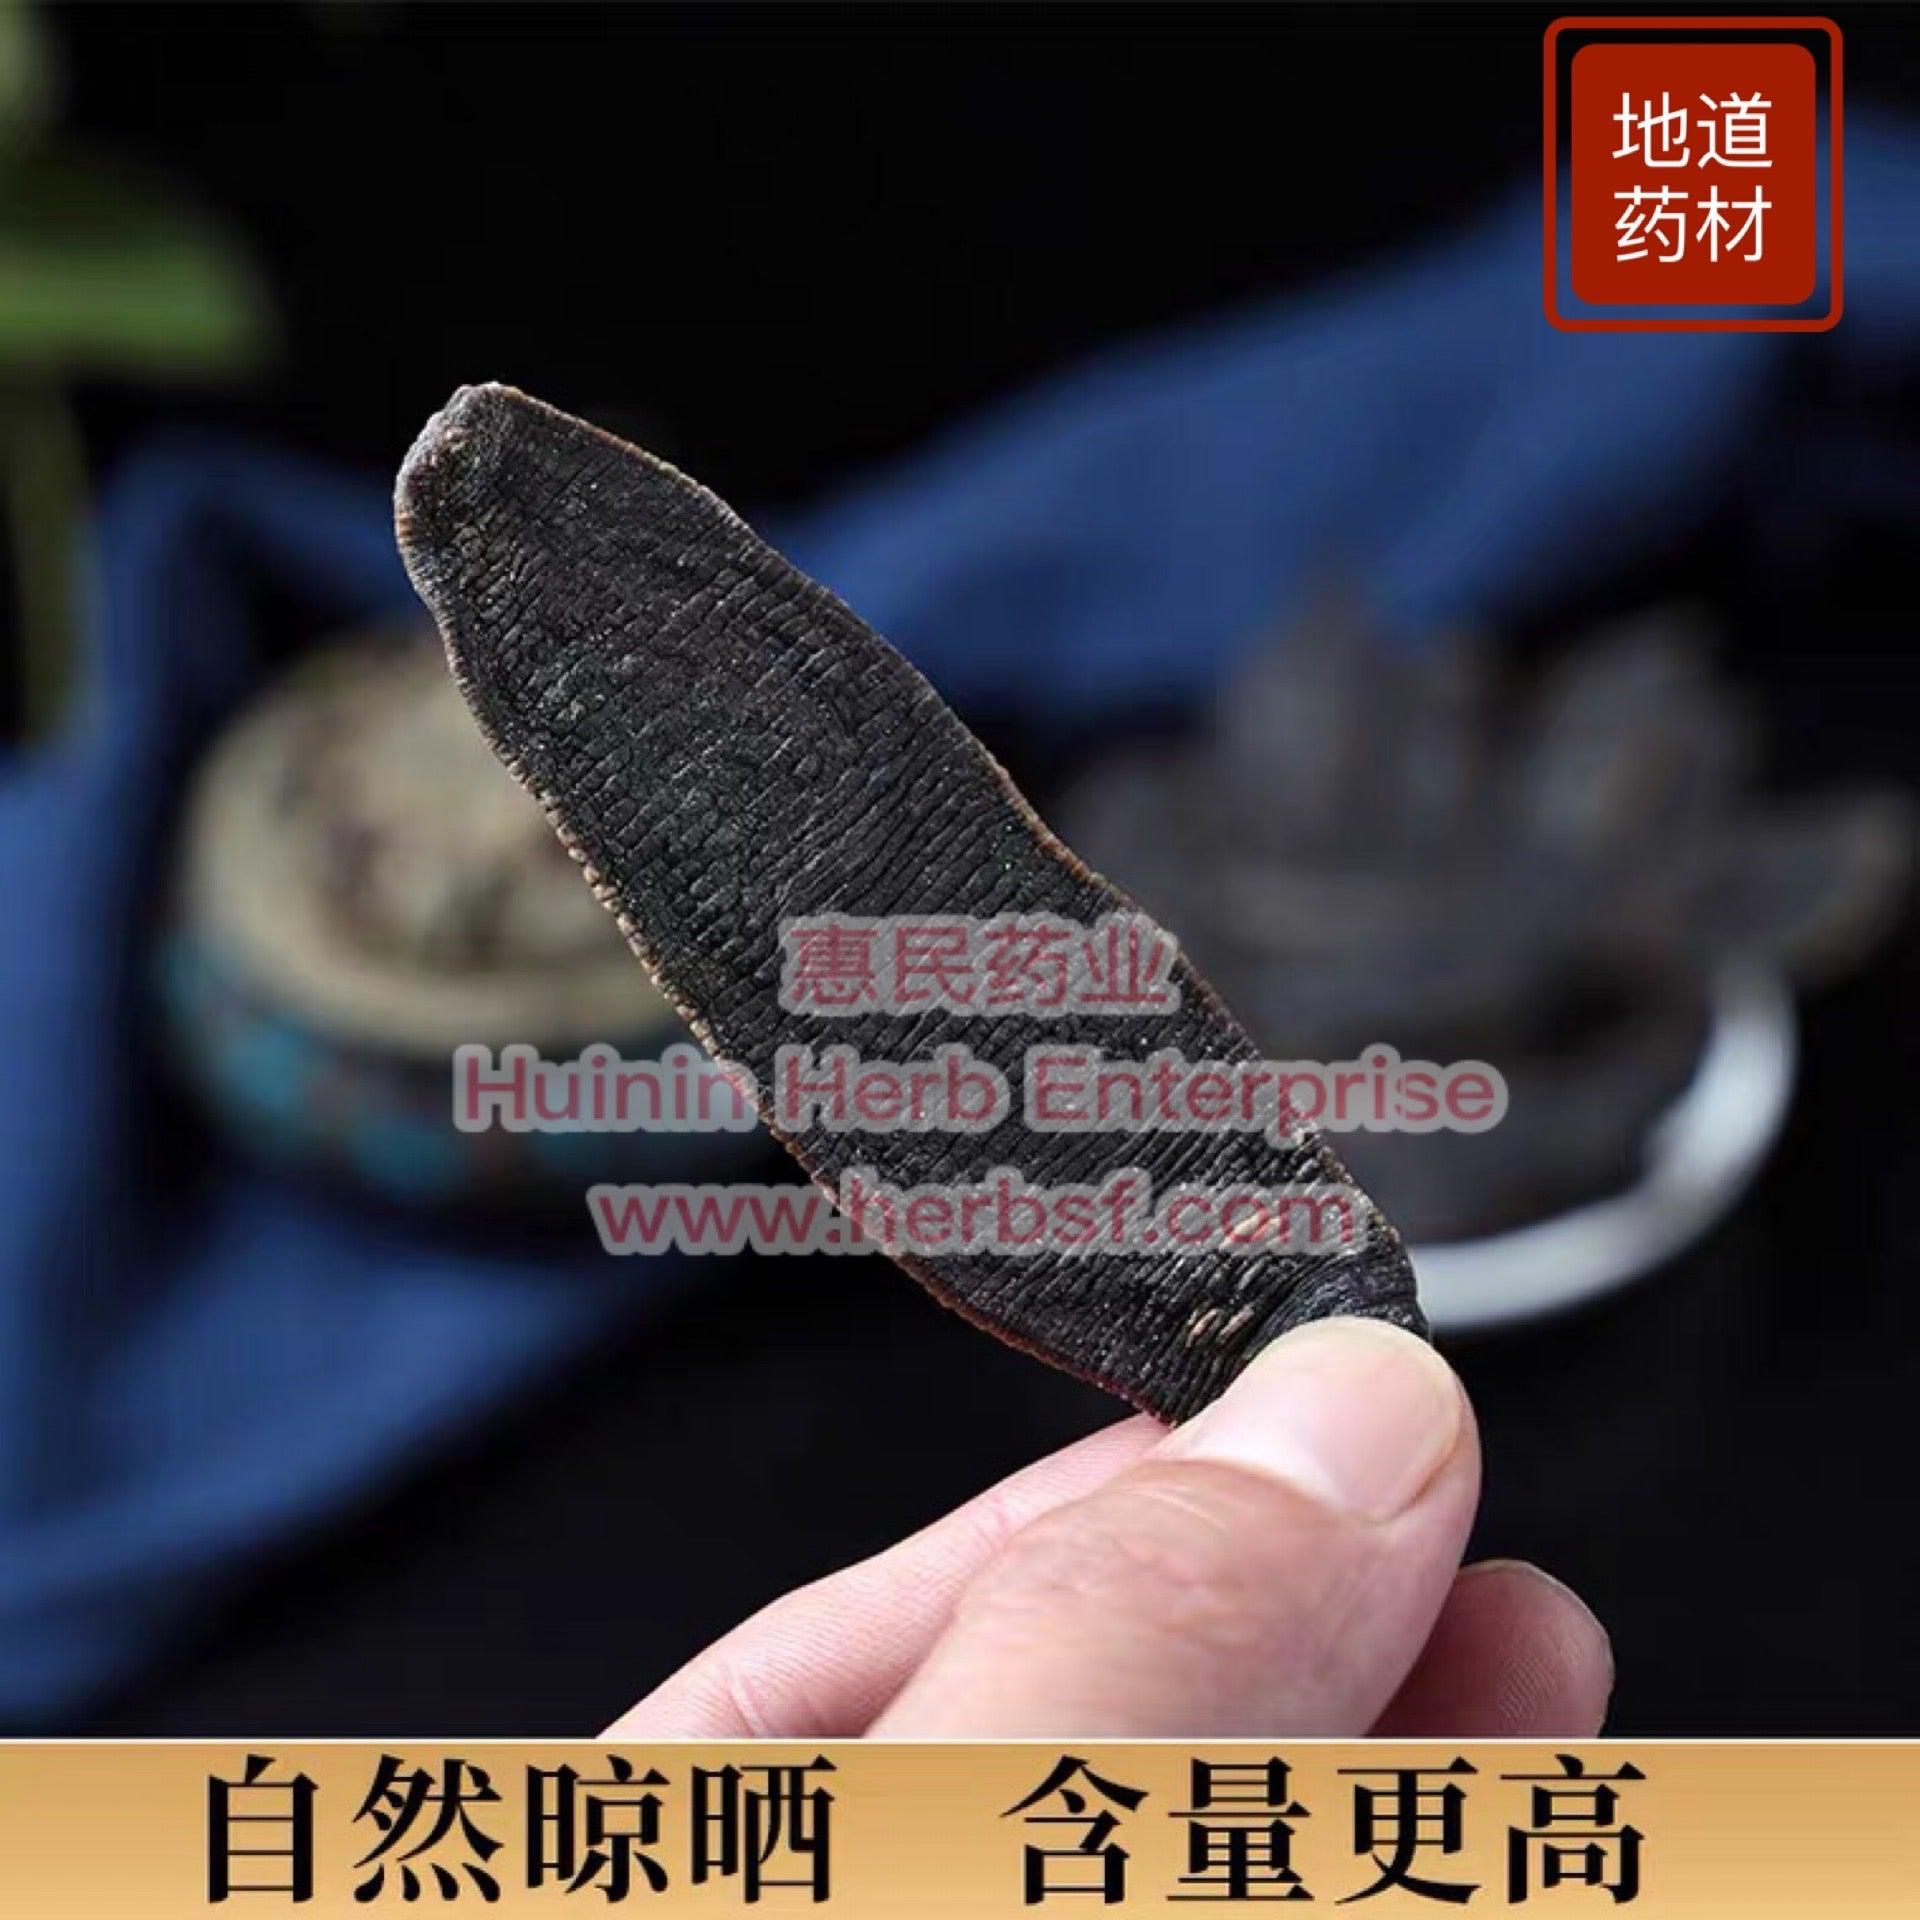 Shui Zhi 1oz - Huimin Herb Online, LLC